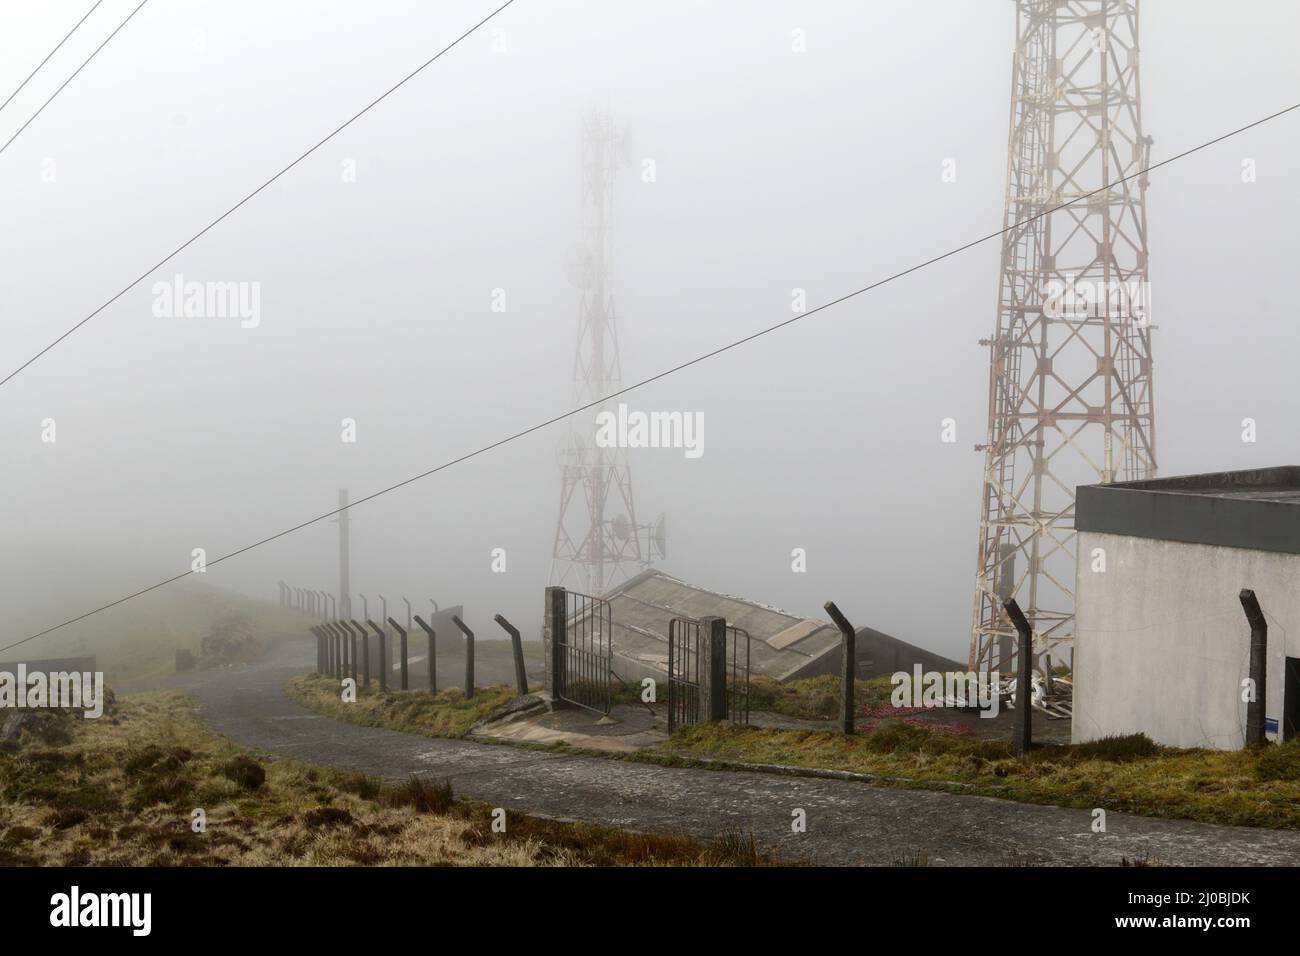 Mâts de treillis sur Pico do Barrosa, île de Sao Miguel, Açores Banque D'Images